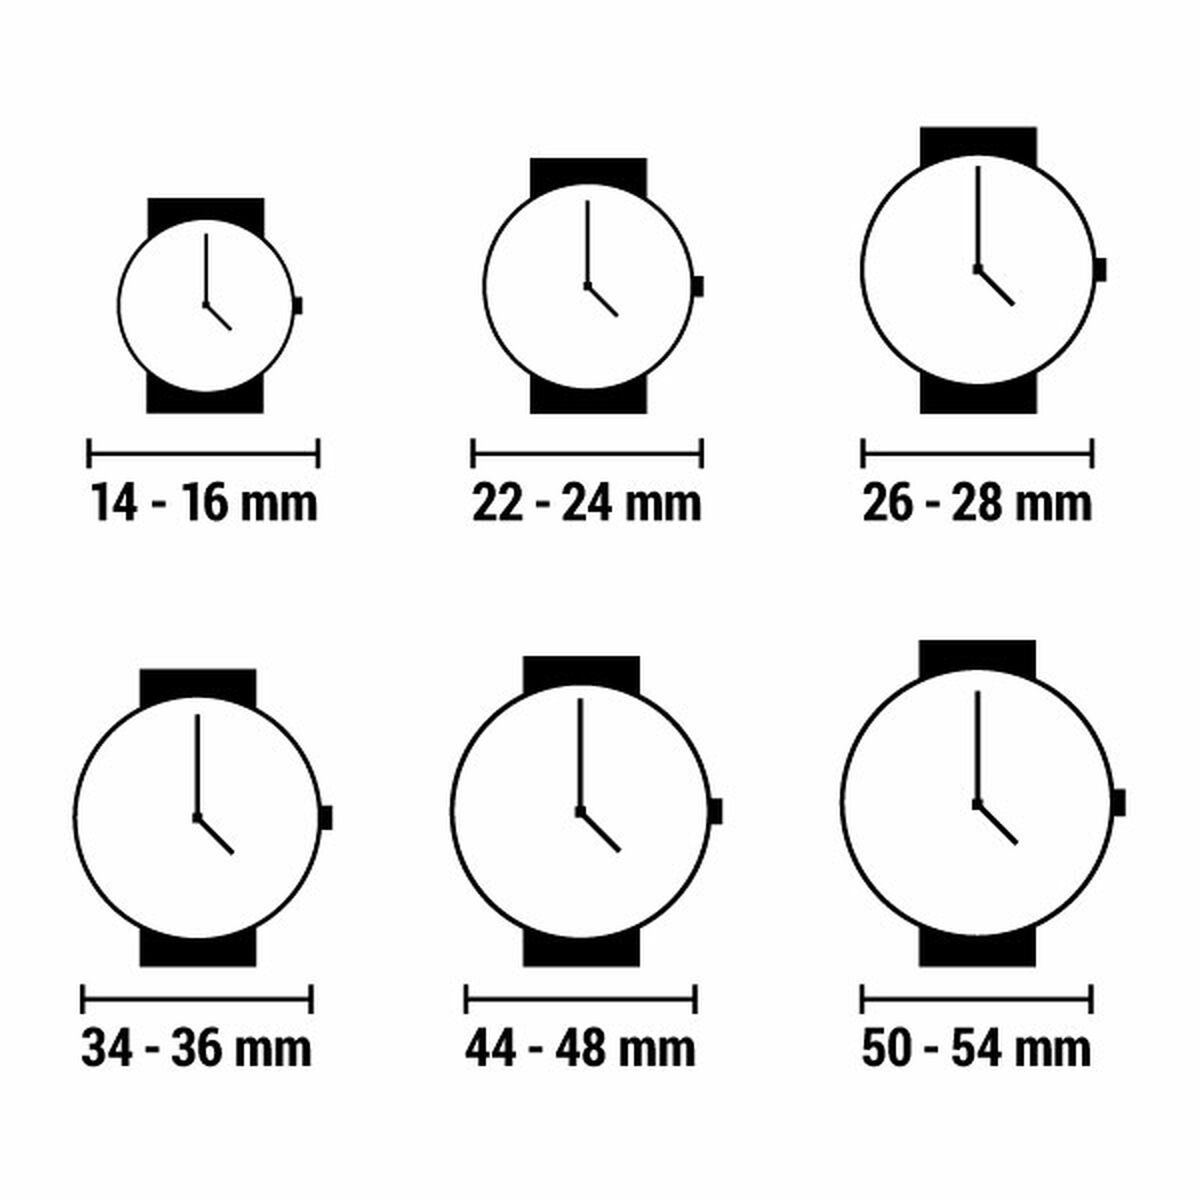 Horloge Dames Bulova 96R215